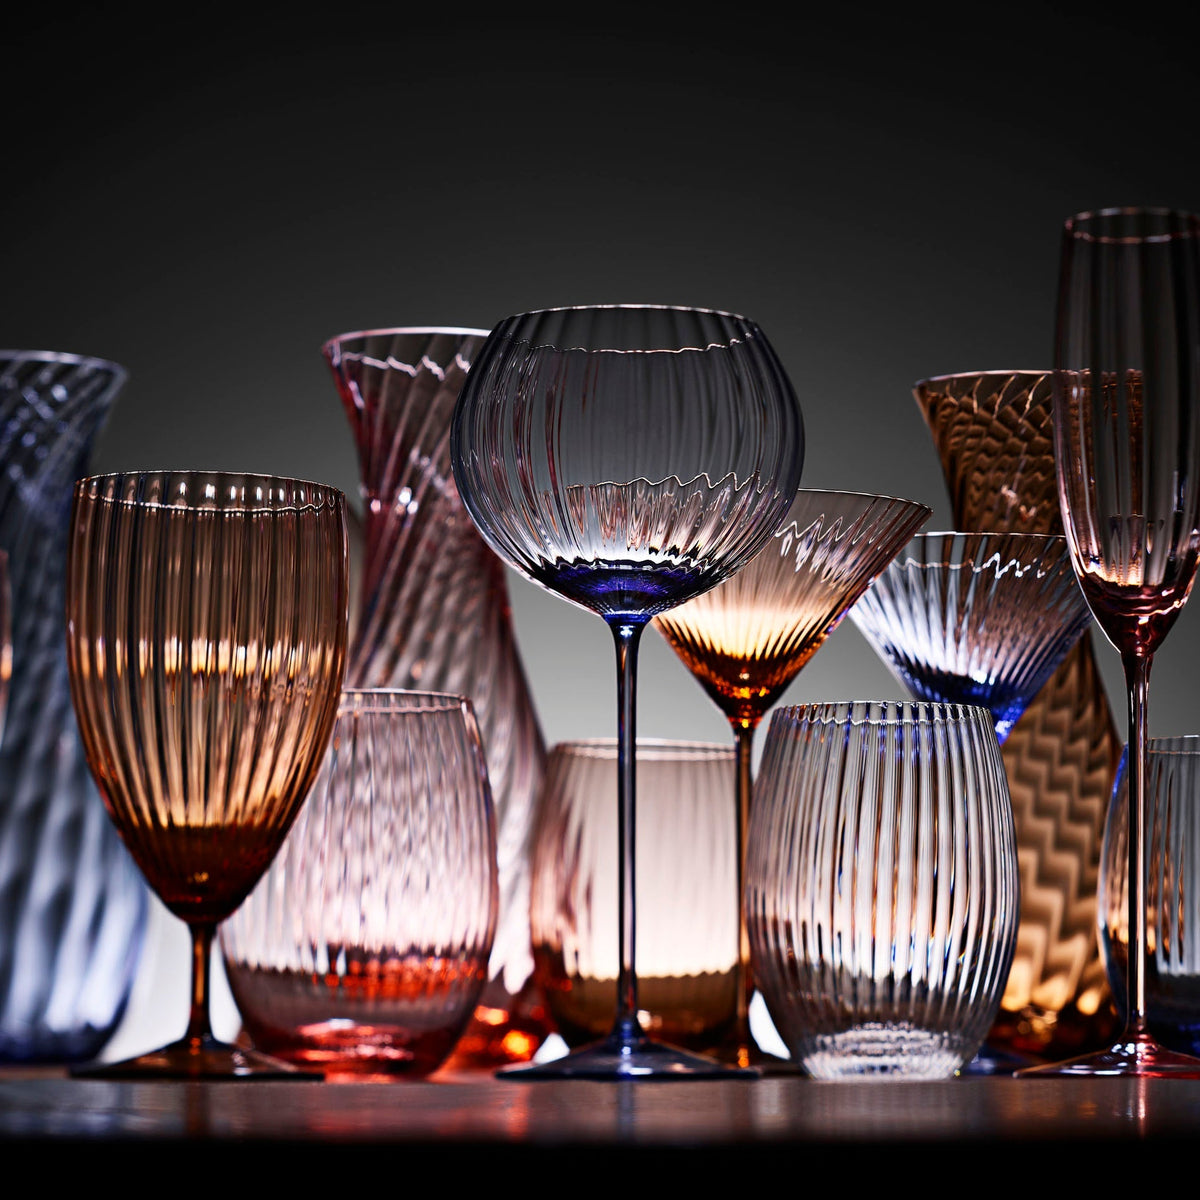 A colorful display of Quinn handblown glassware by Caskata.